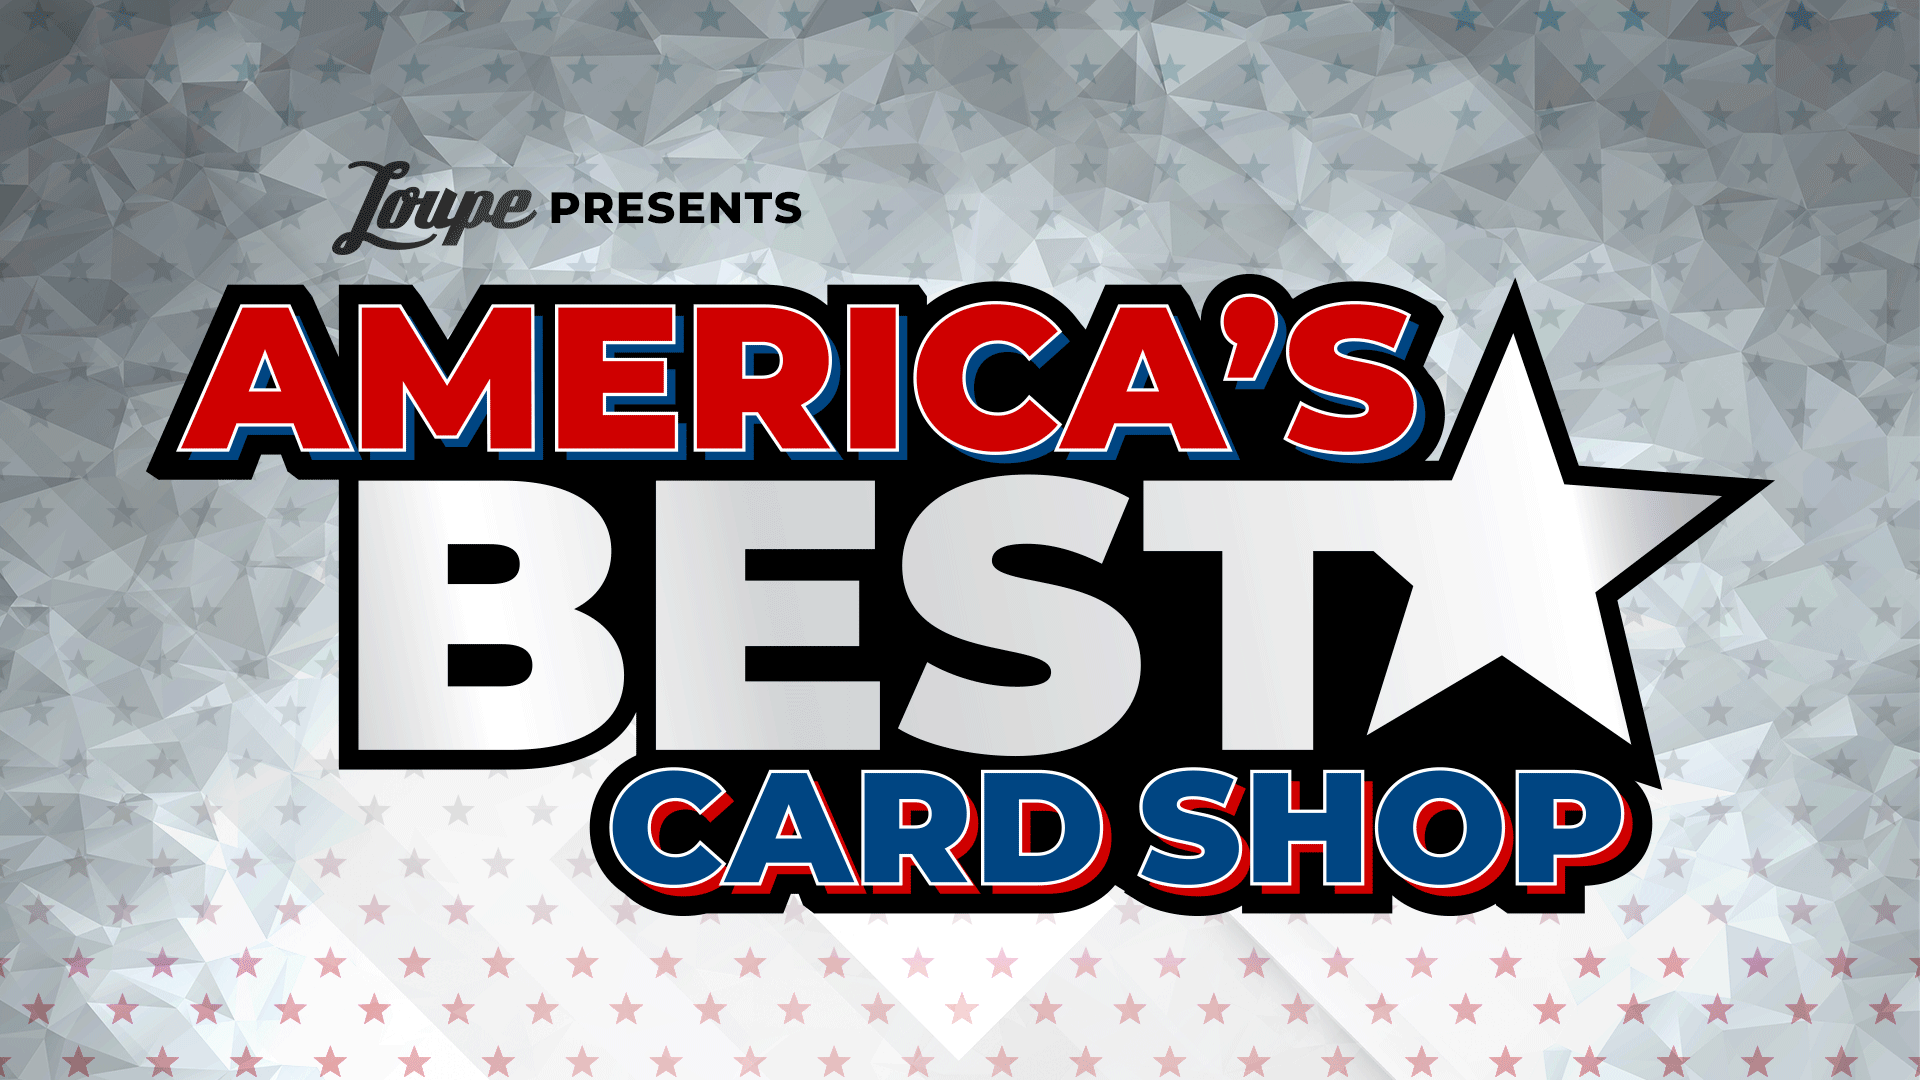 America's Best Card Shop